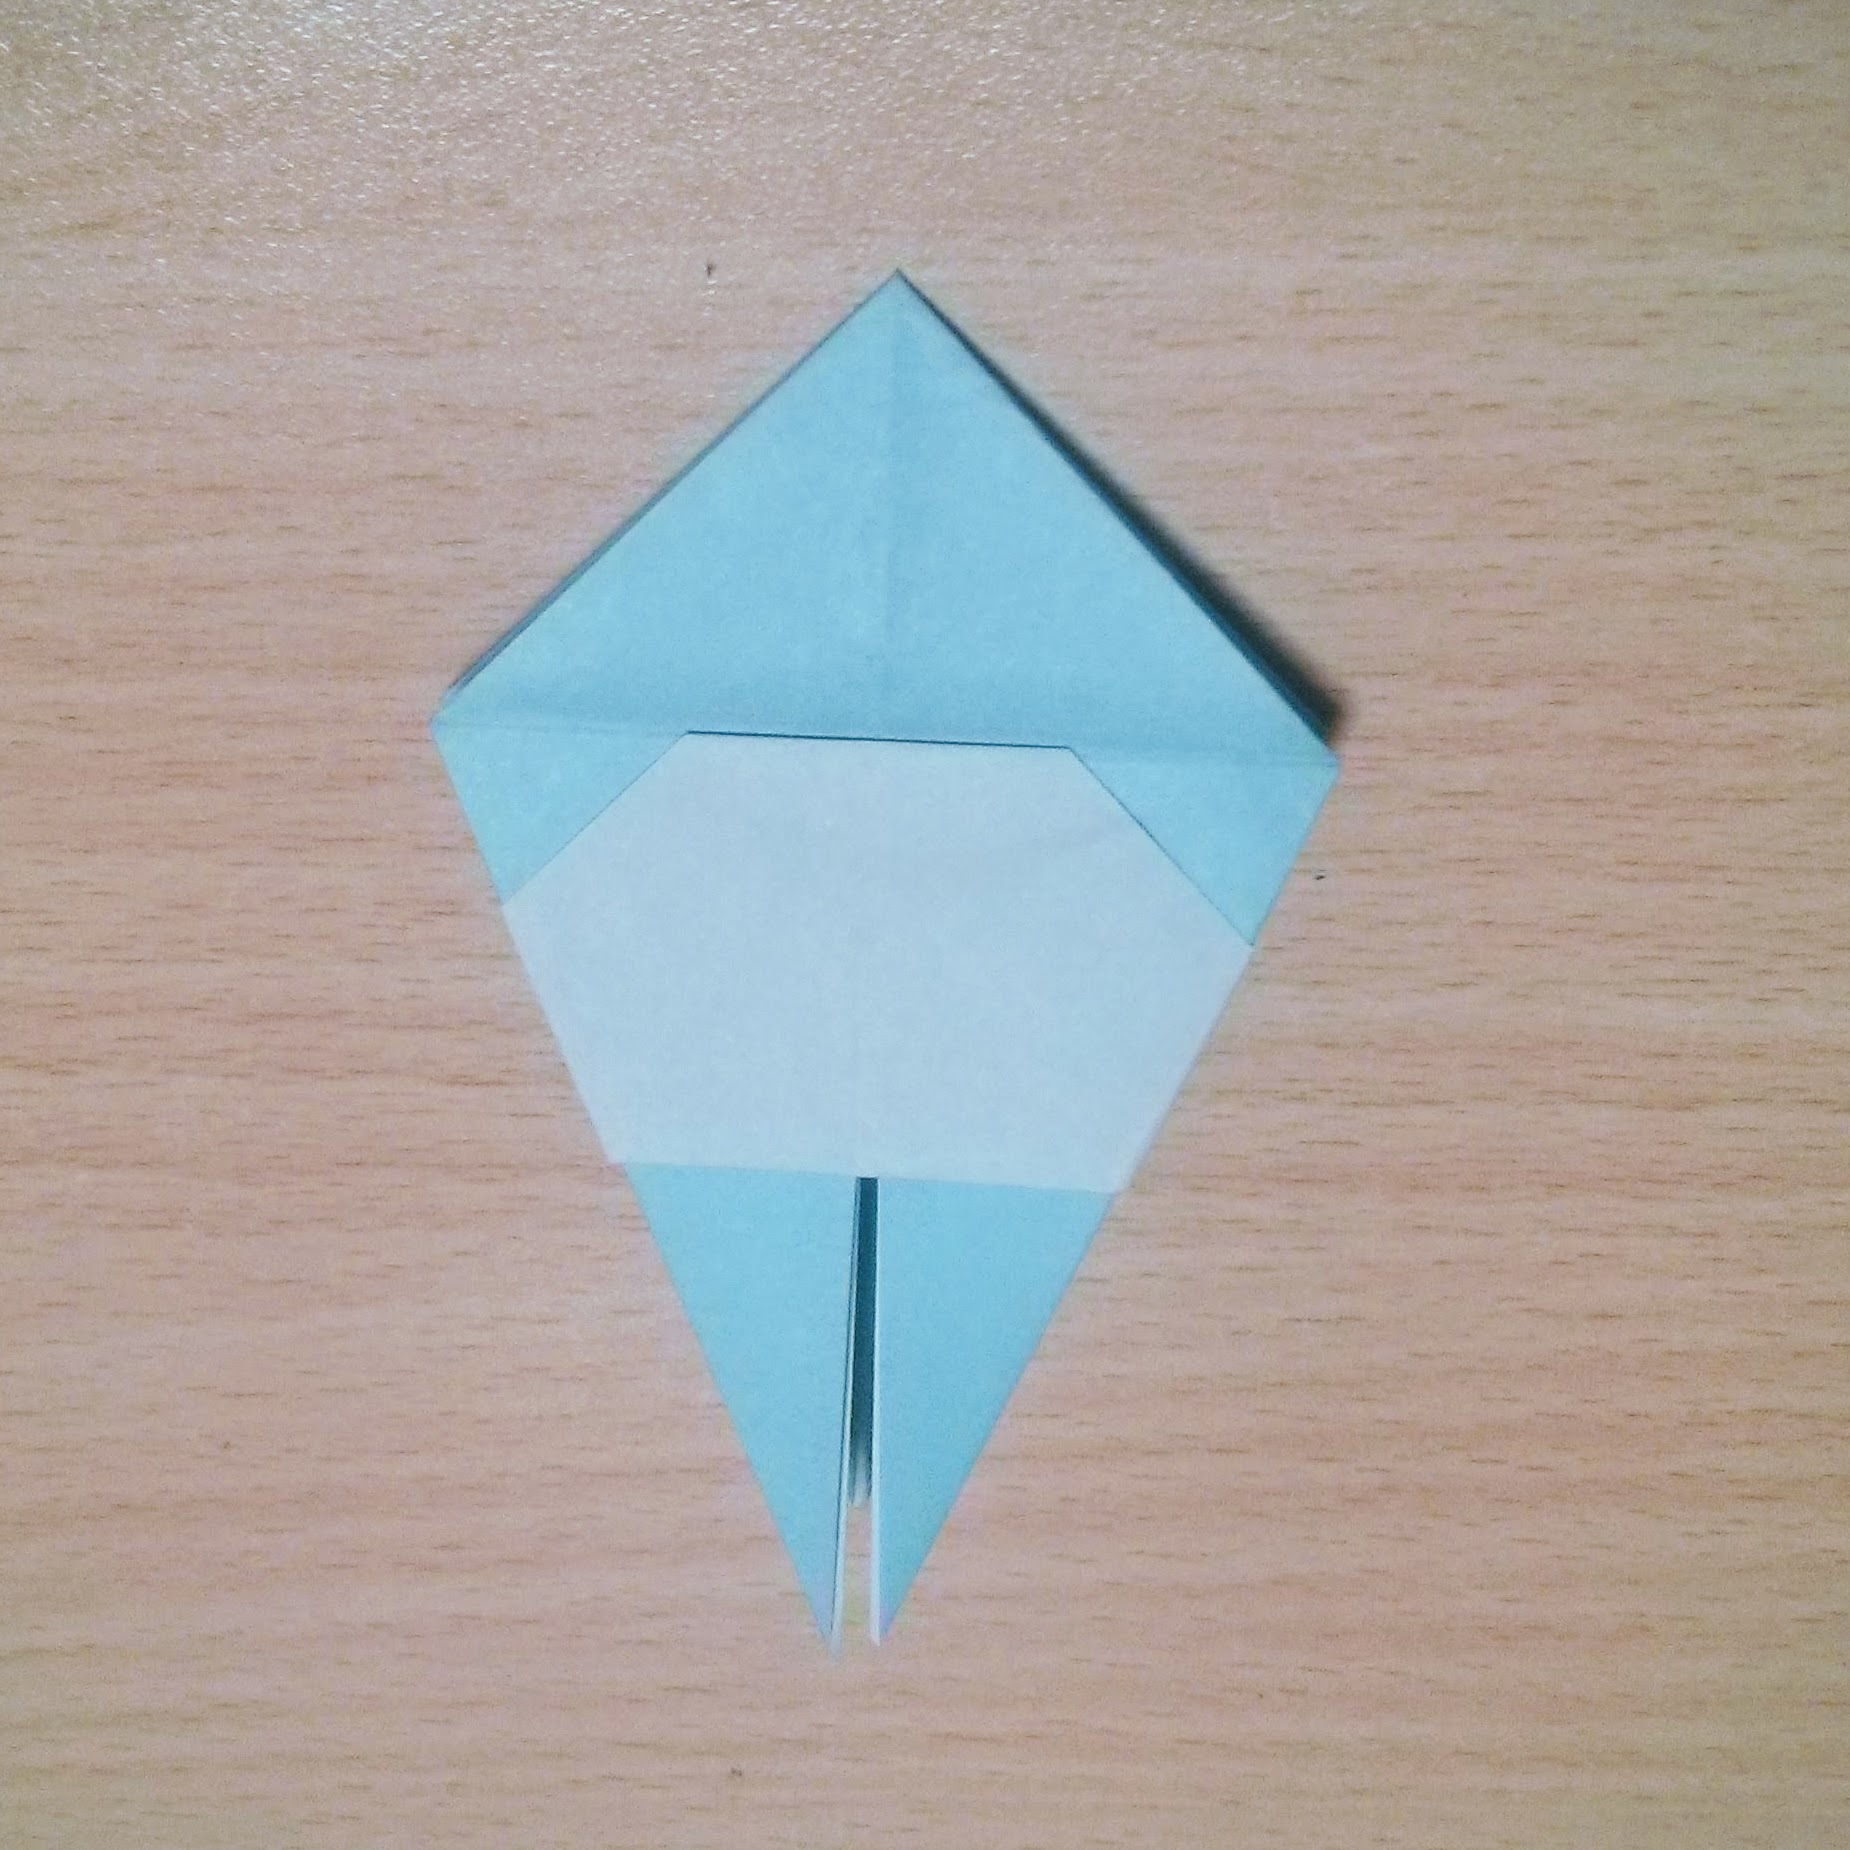 ジブリキャラクター トロロ の折り紙での折り方 平面 立体の作り方まとめ 4ページ目 暮らし の